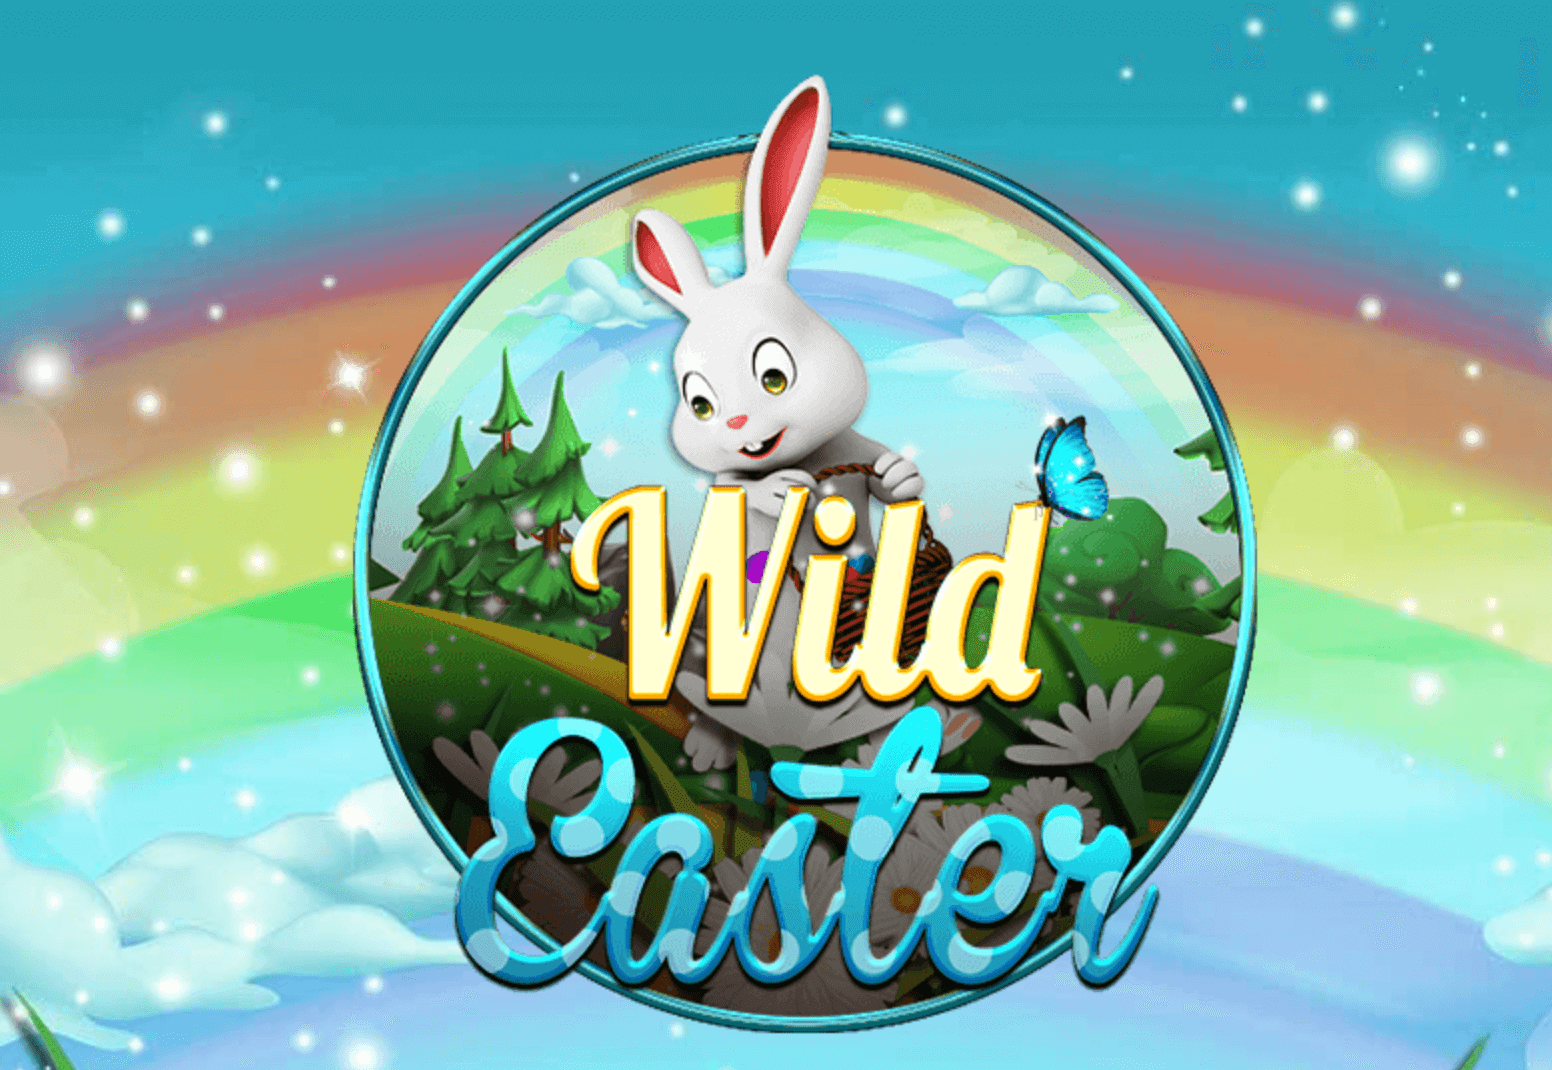 Wild Easter slot